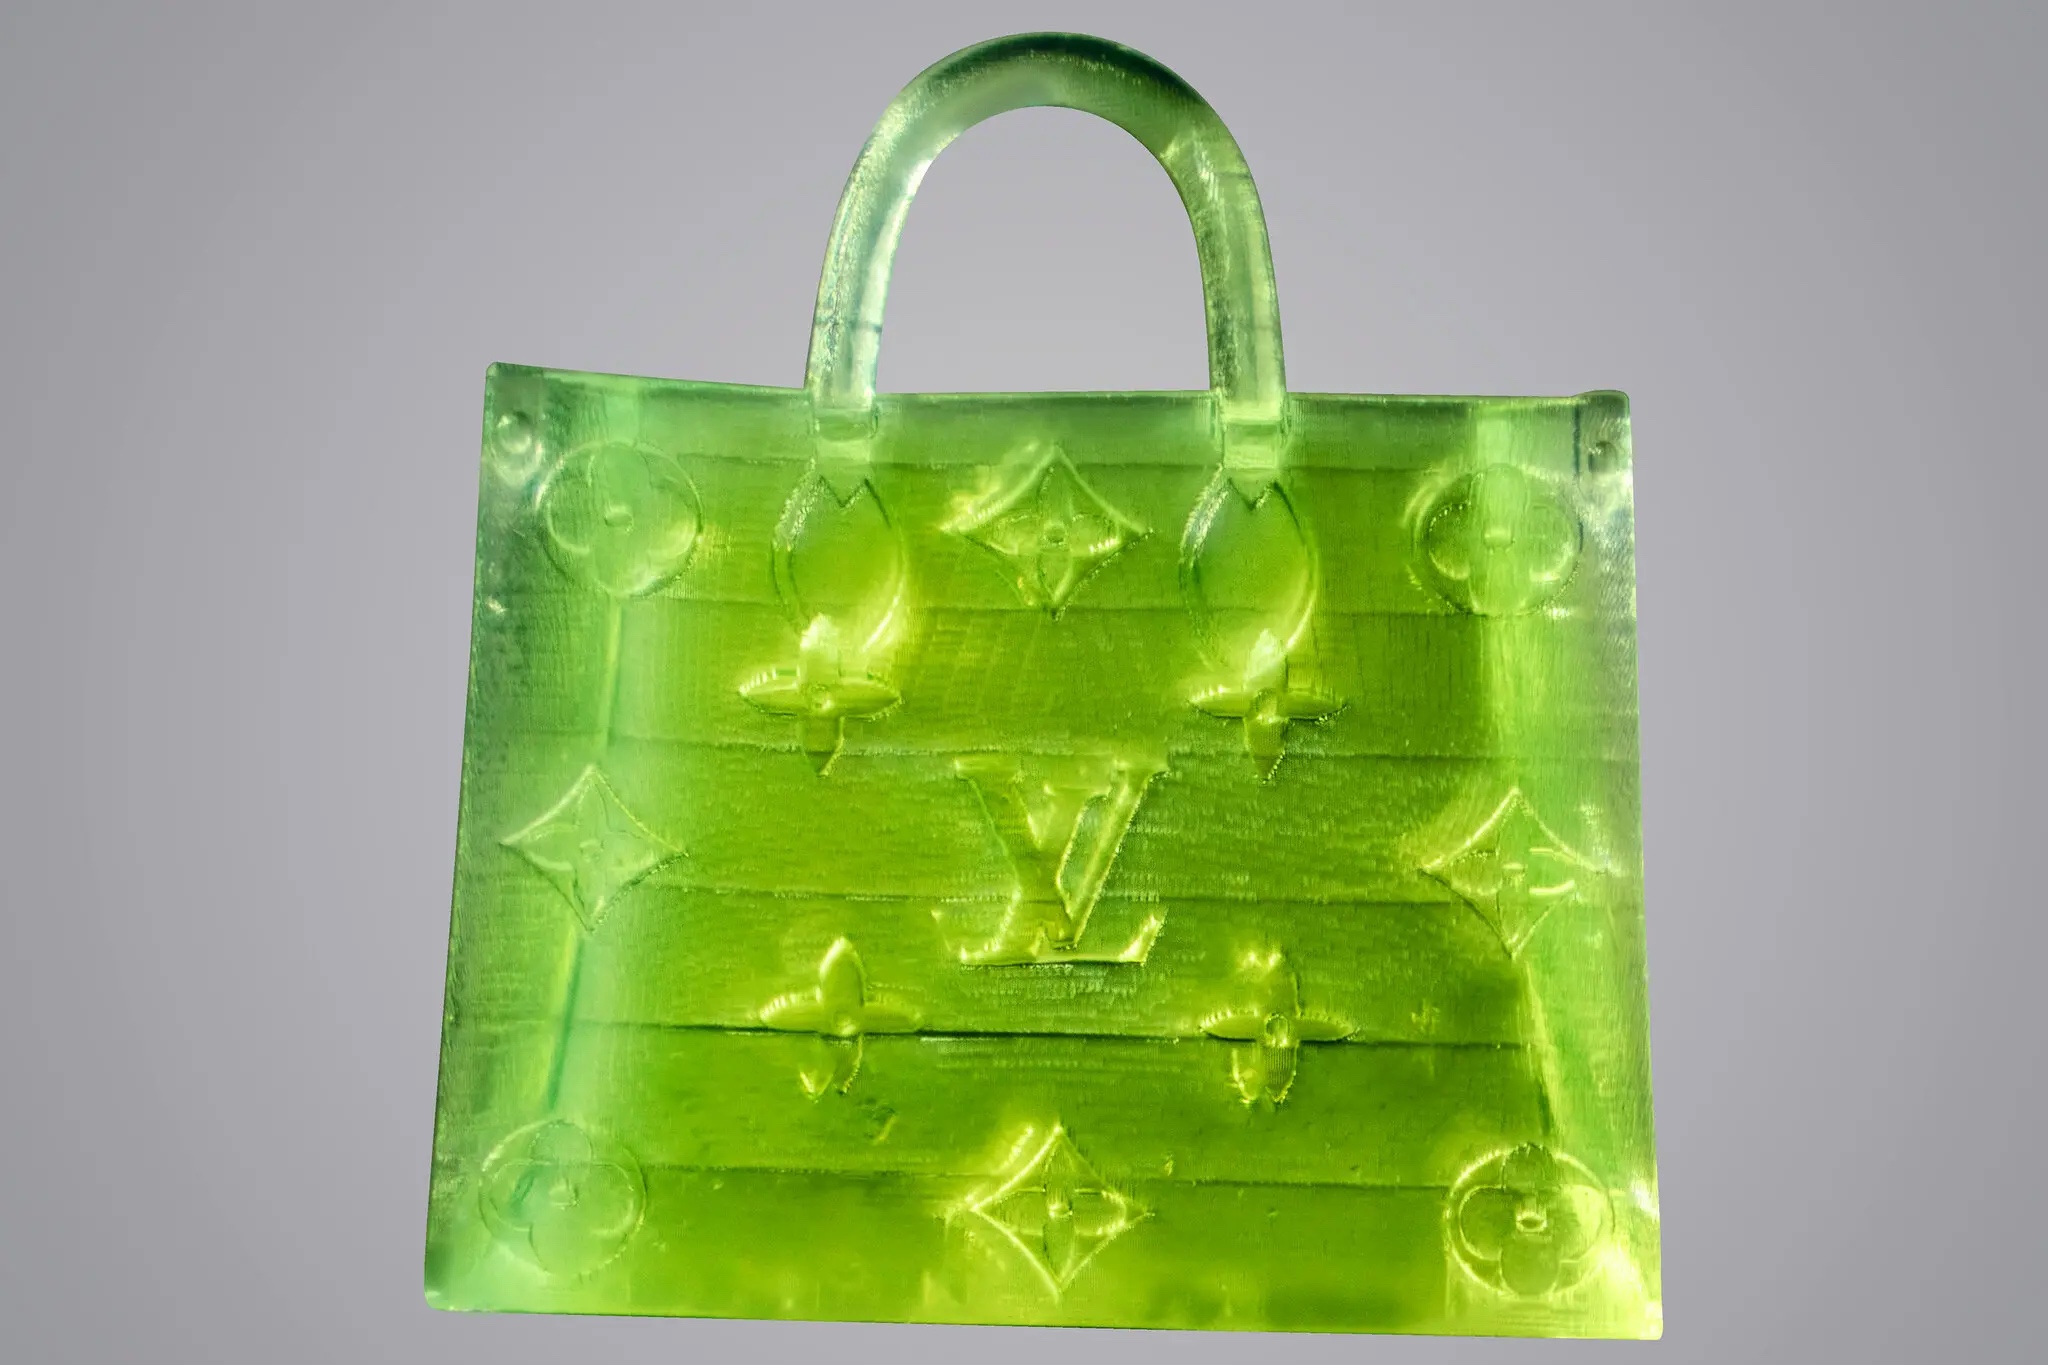 Меньше крупинки соли: сумку Louis Vuitton превратили в микроскопическую версию фото 3